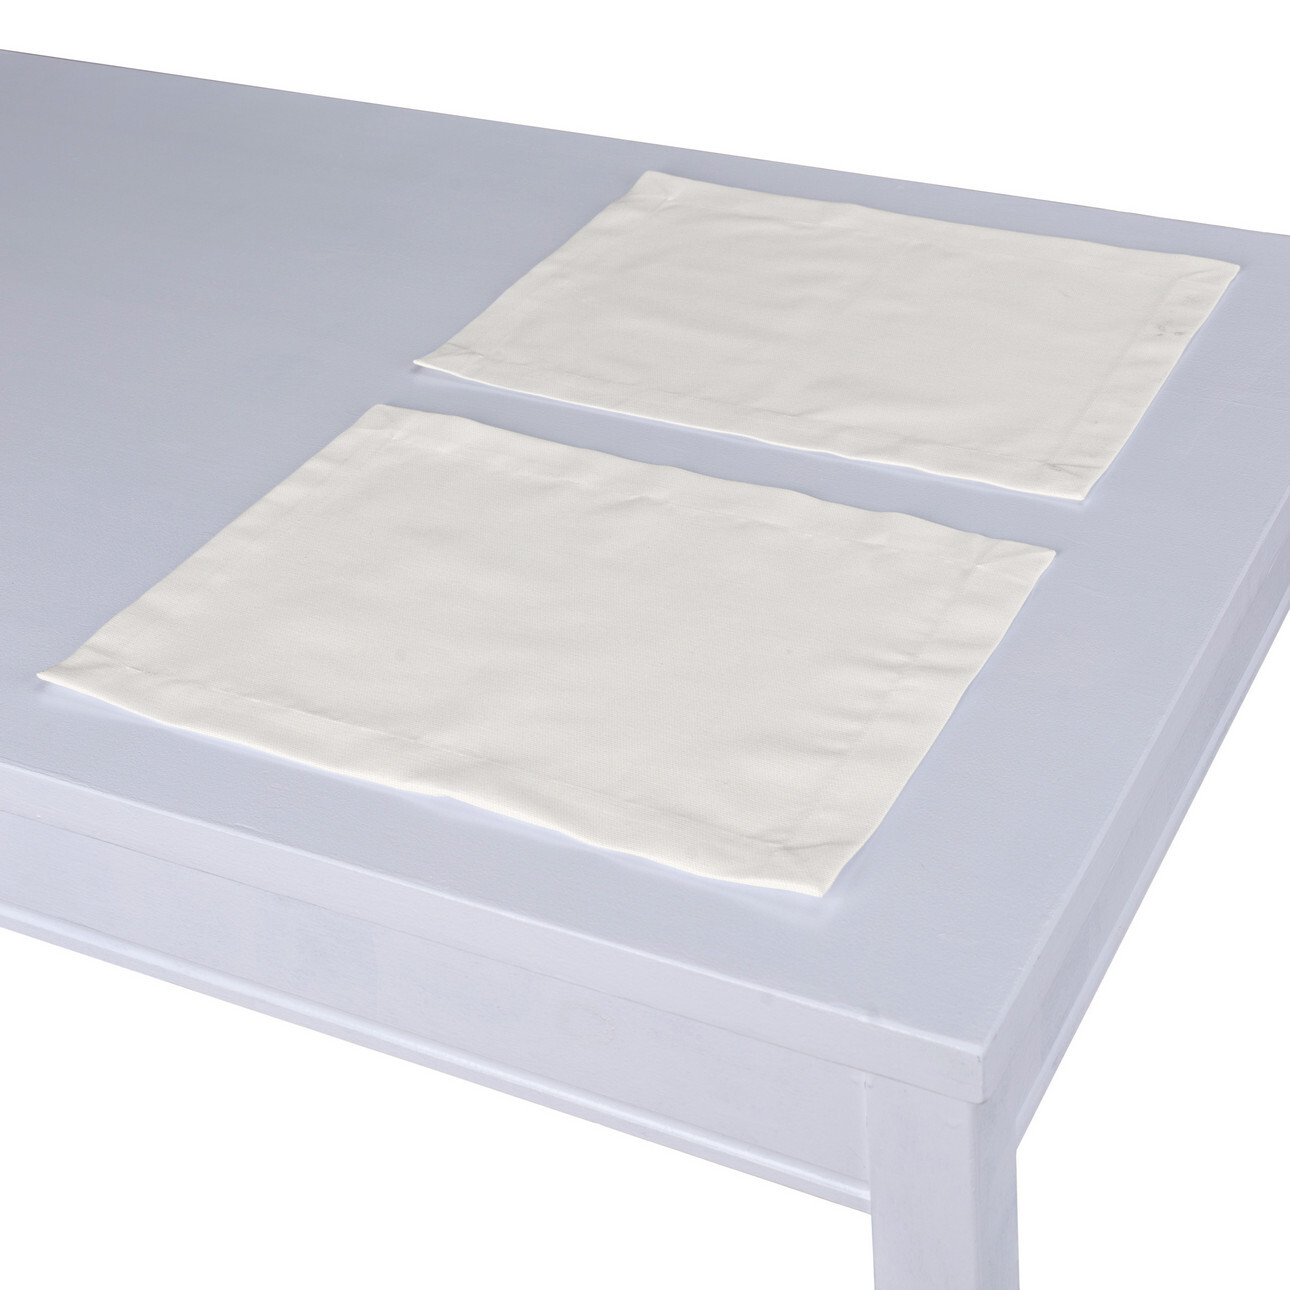 Tischset 2 Stck., weiss, 30 x 40 cm, Cotton Panama (702-49) günstig online kaufen